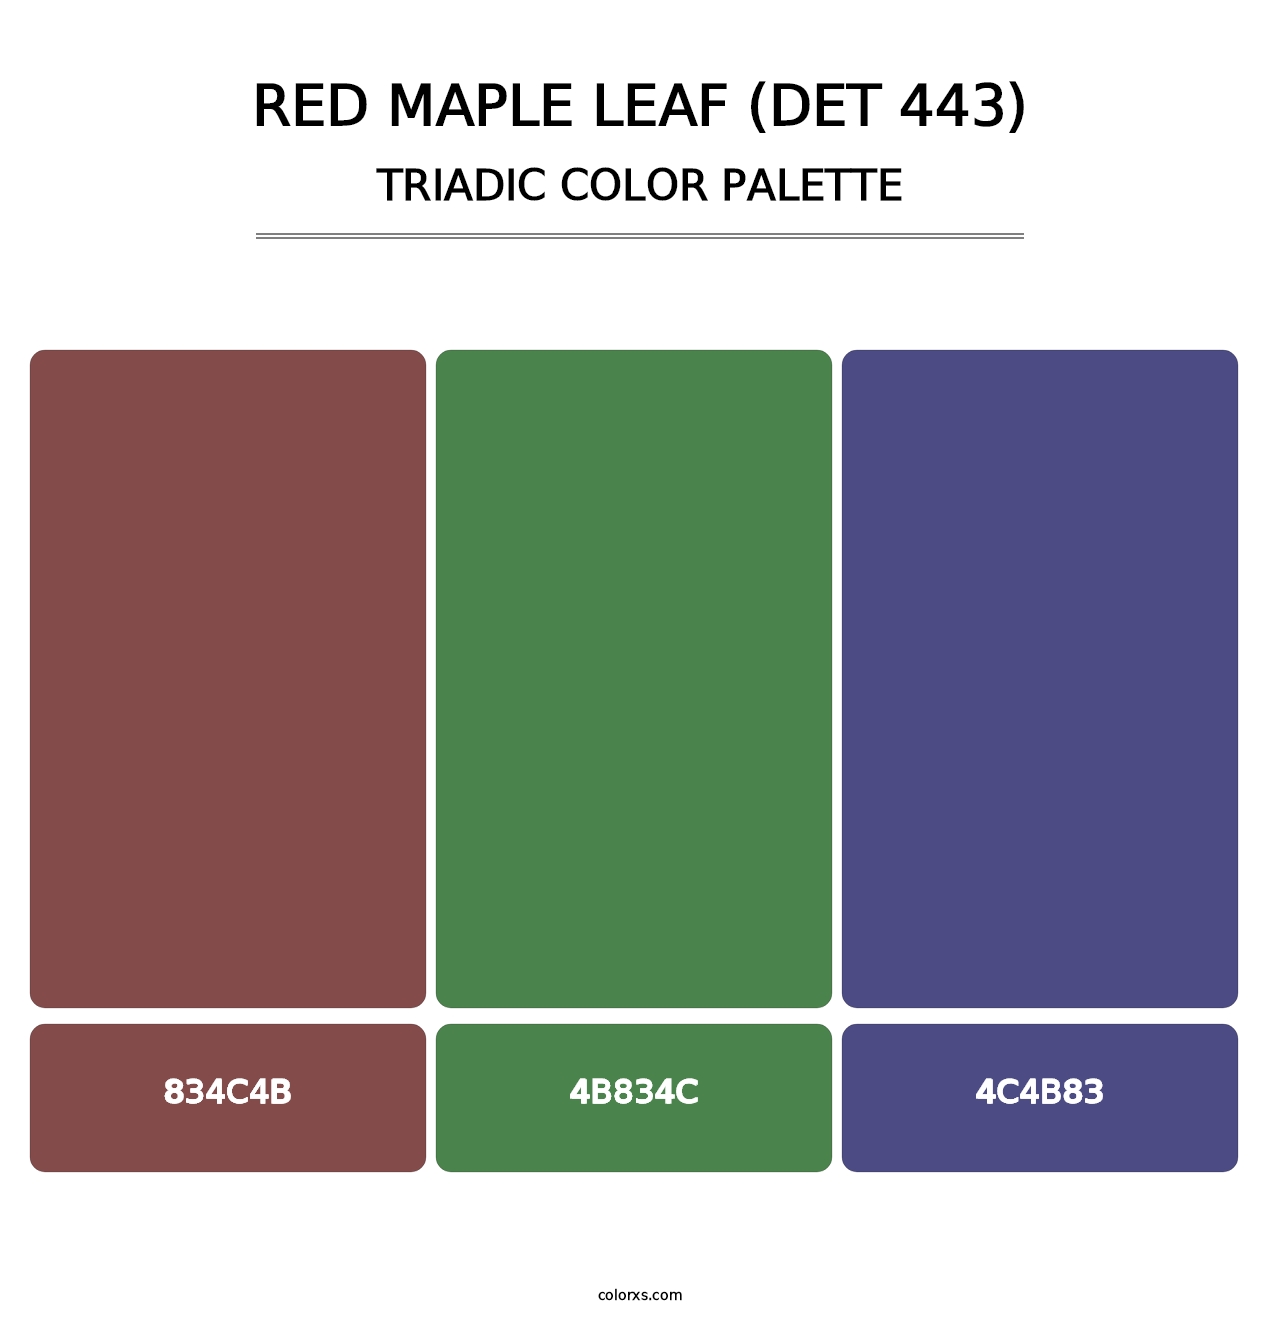 Red Maple Leaf (DET 443) - Triadic Color Palette